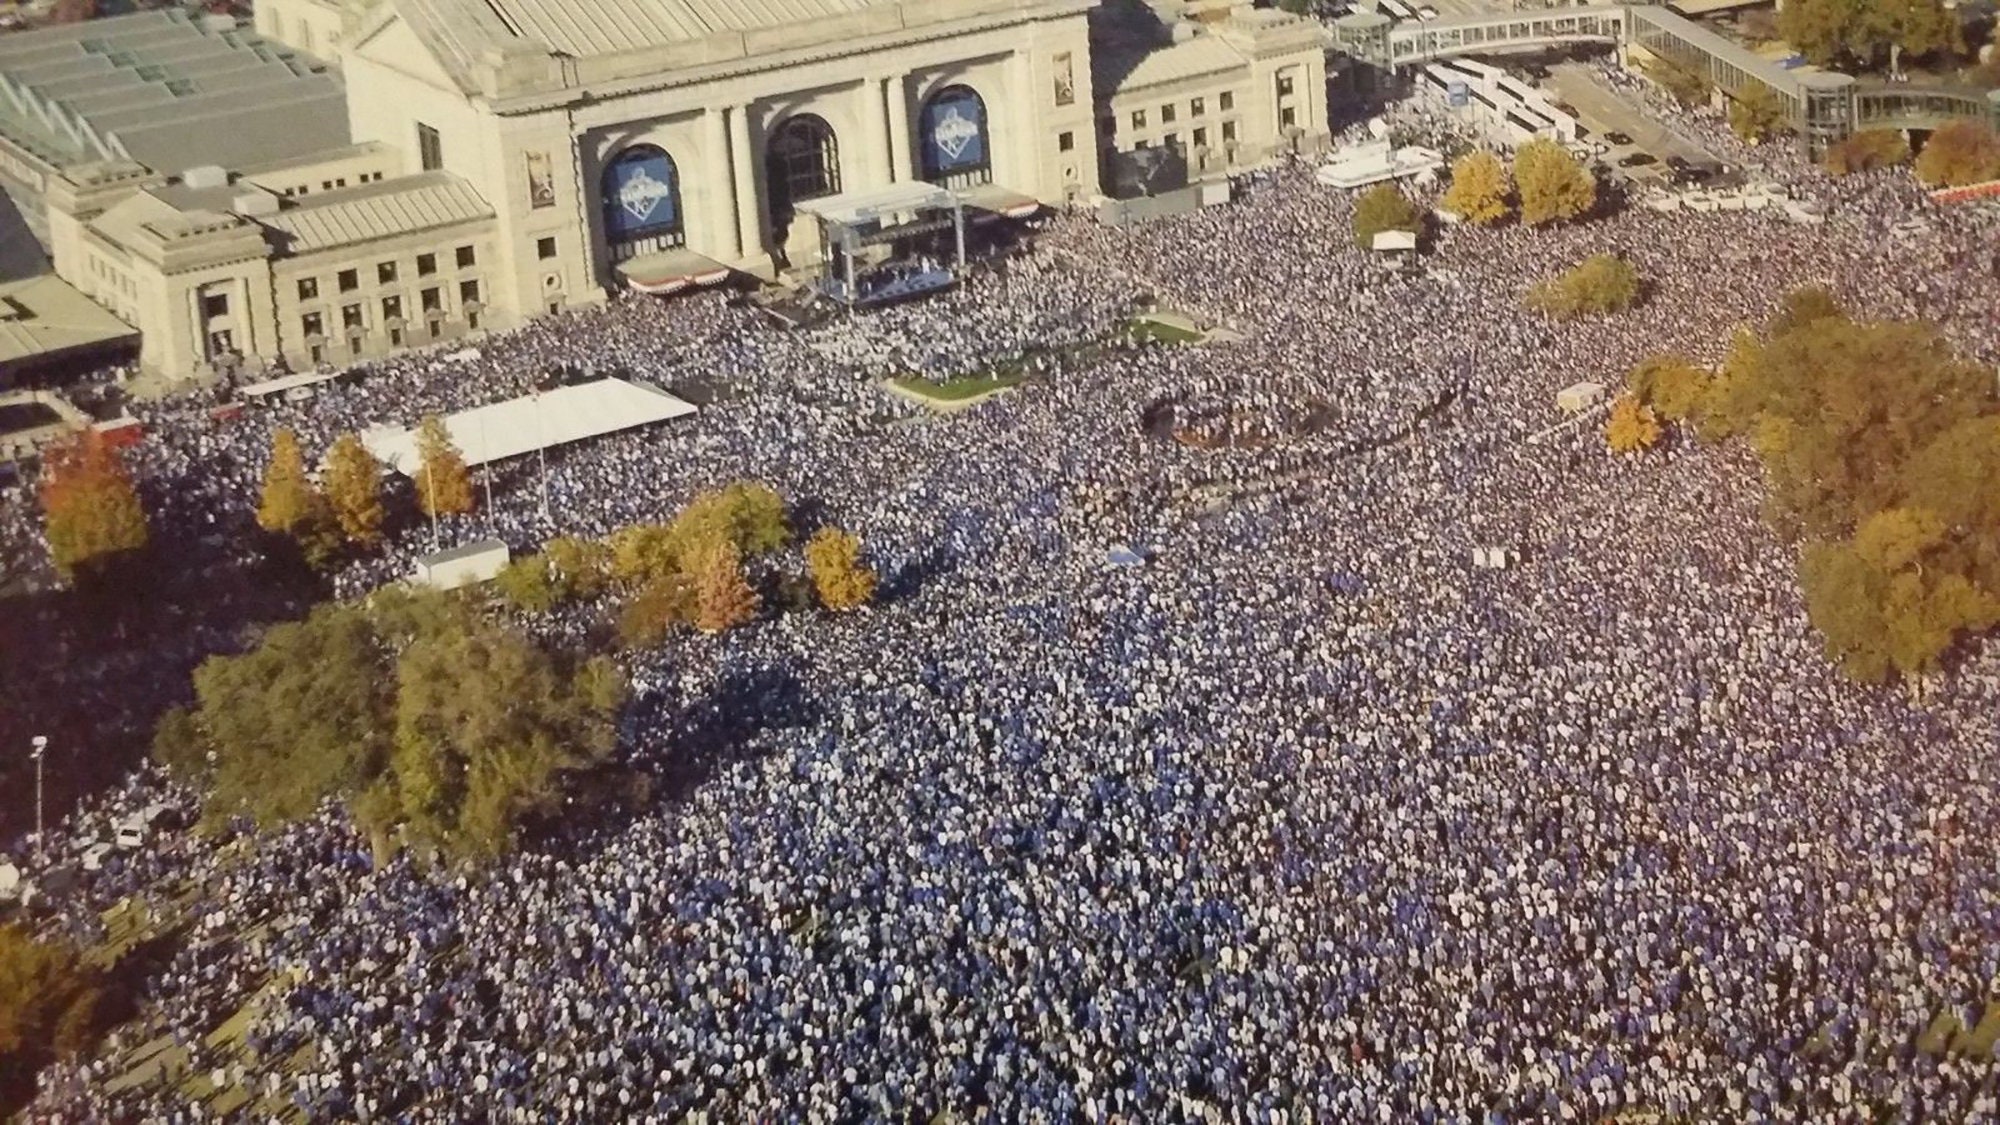 Kansas City Royals World Series Victory Parade Poster Rally 